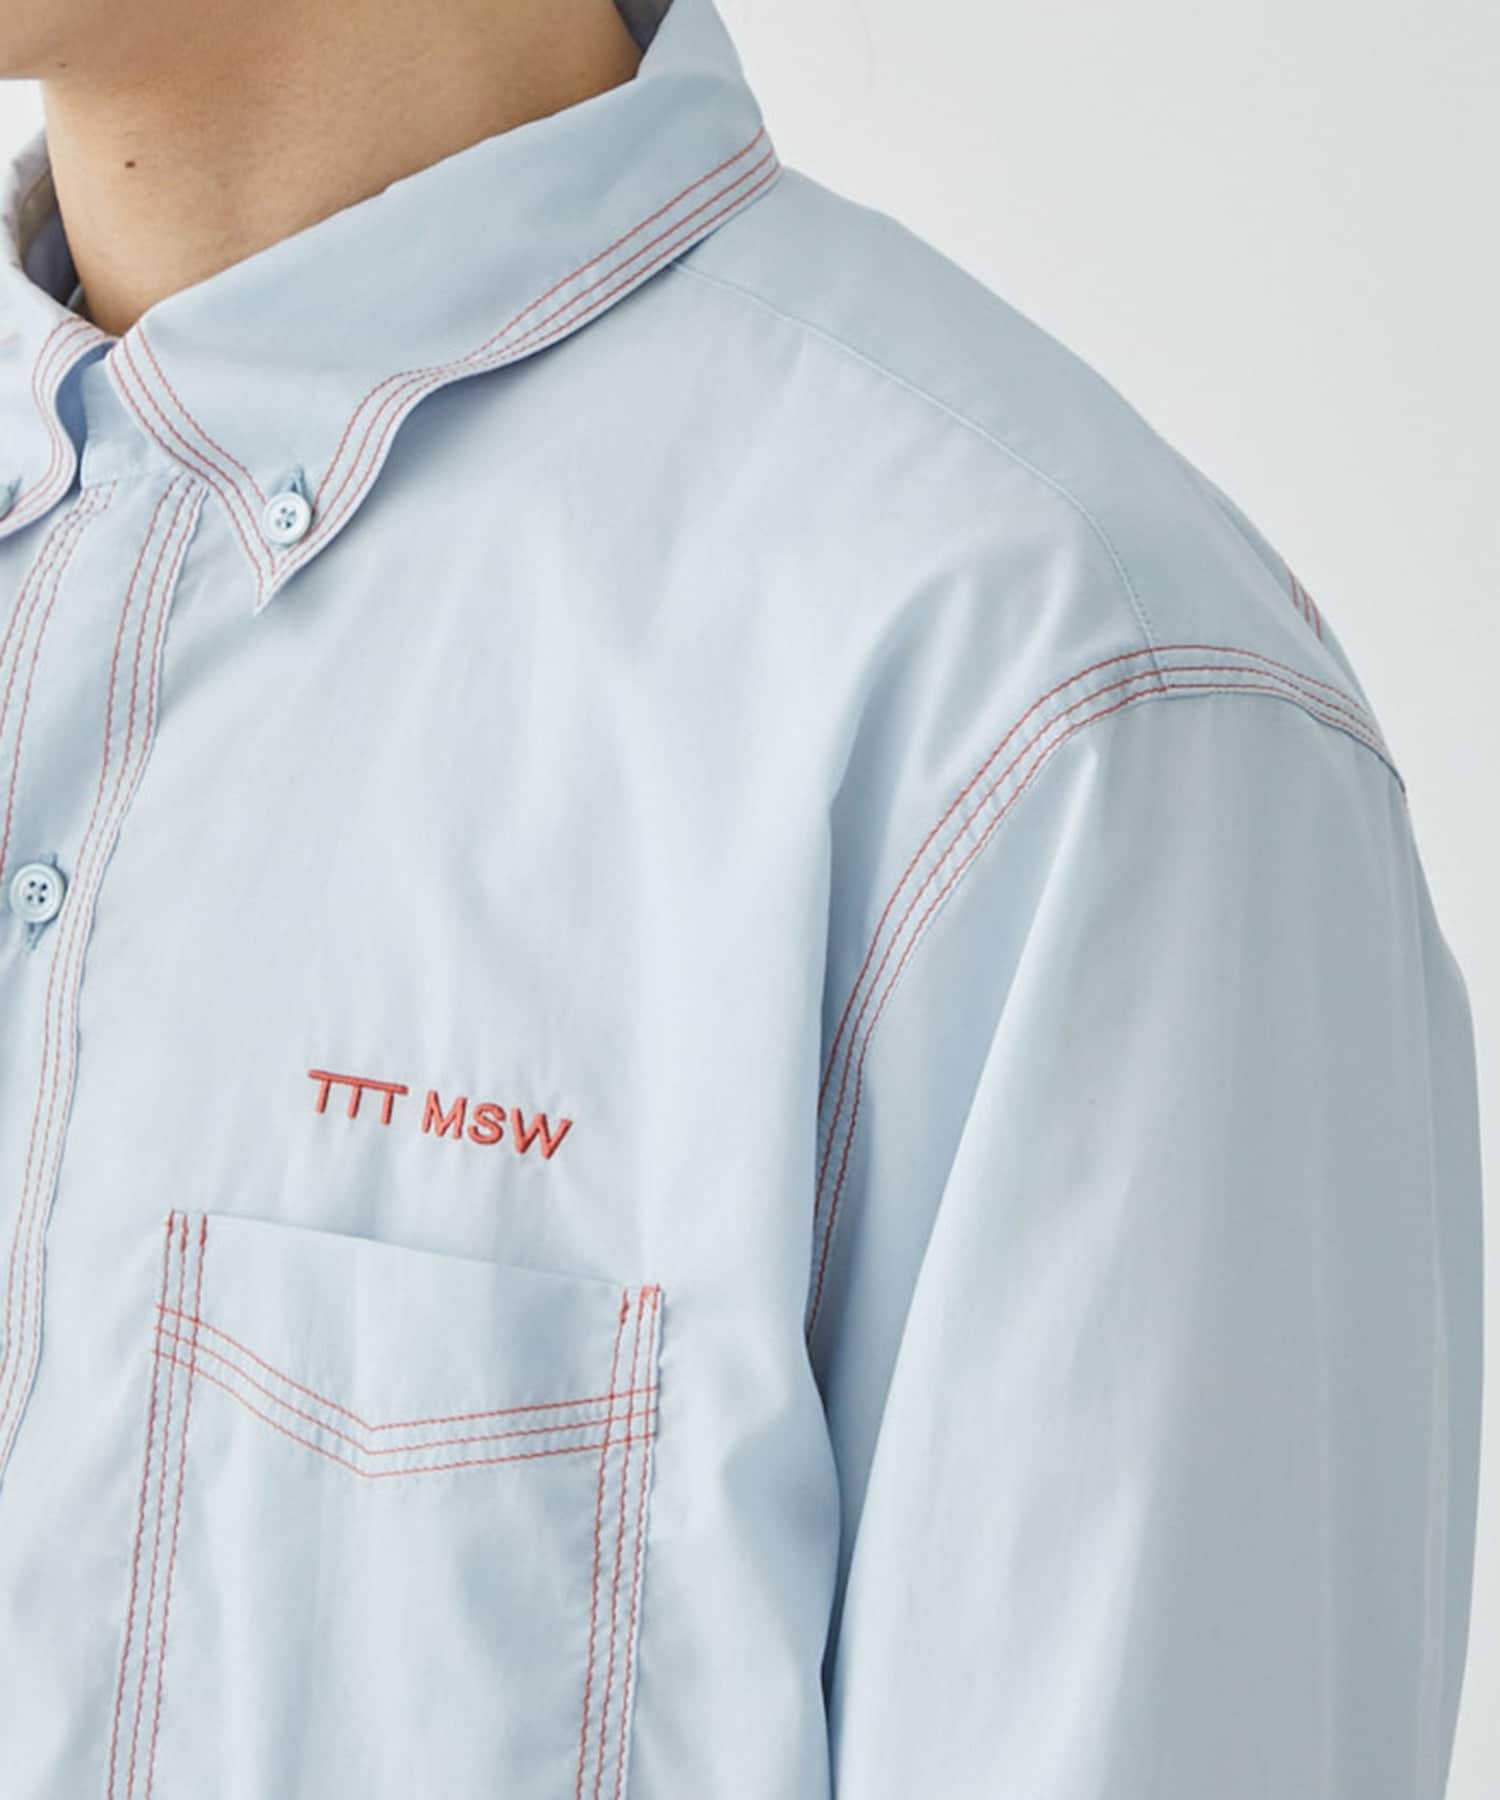 Button down shirt TTT MSW